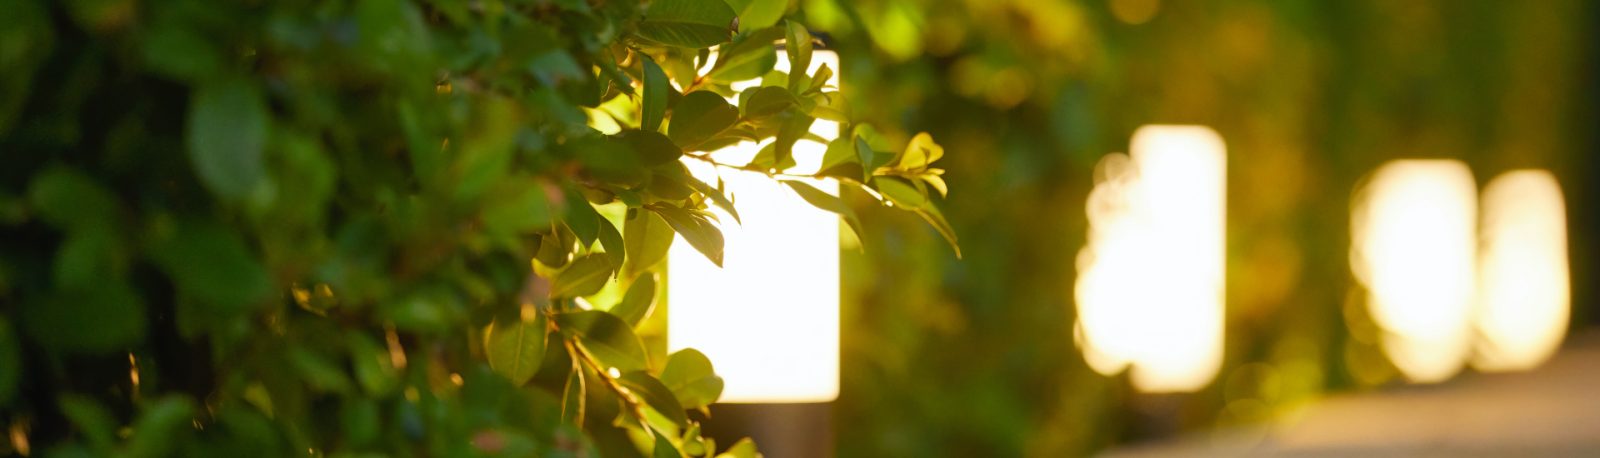 Elluminate Lighting Australia - Outdoor Garden Spotlights